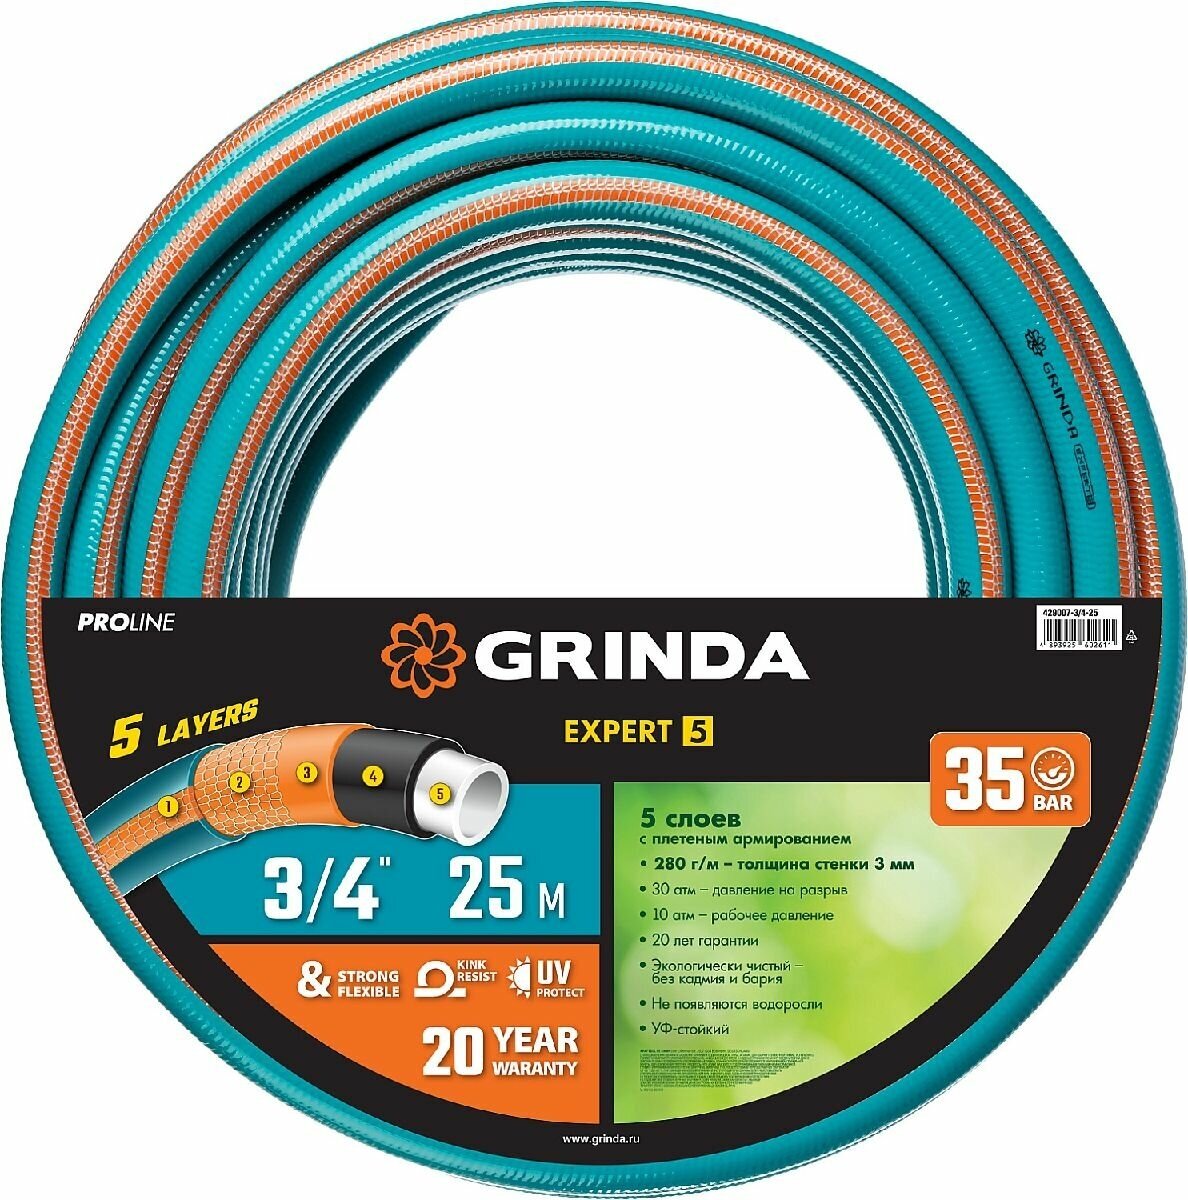 Поливочный шланг GRINDA PROLine Expert 5 3 4 , 25 м, 30 атм, пятислойный, армированный (429007-3 4-25)